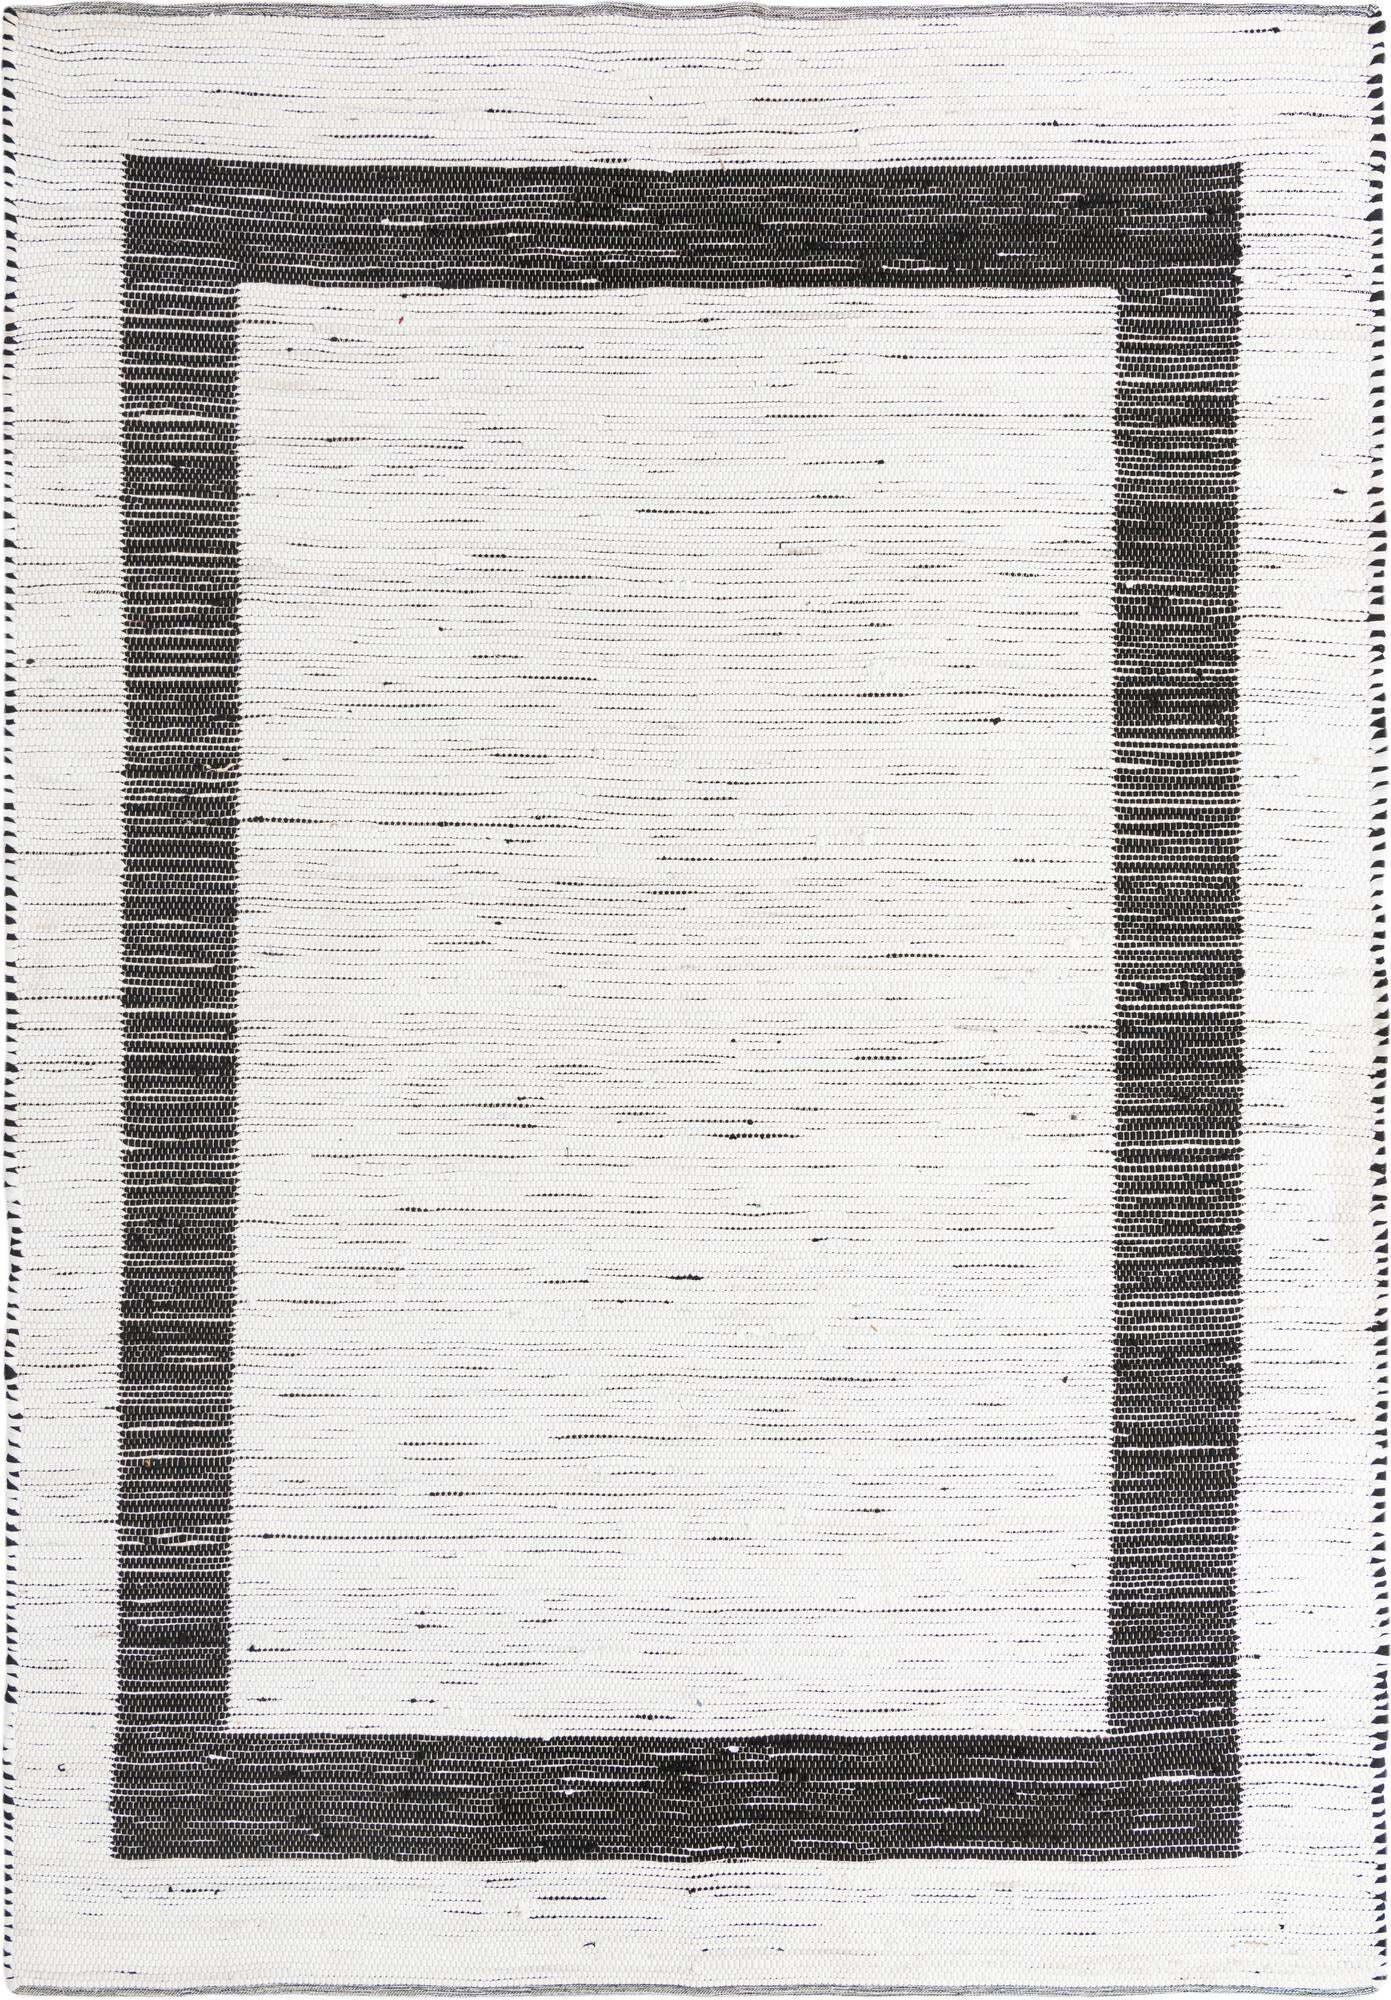 Unique Loom Indoor Rugs - Chindi Jute Border Rectangular 9x12 Rug White & Black